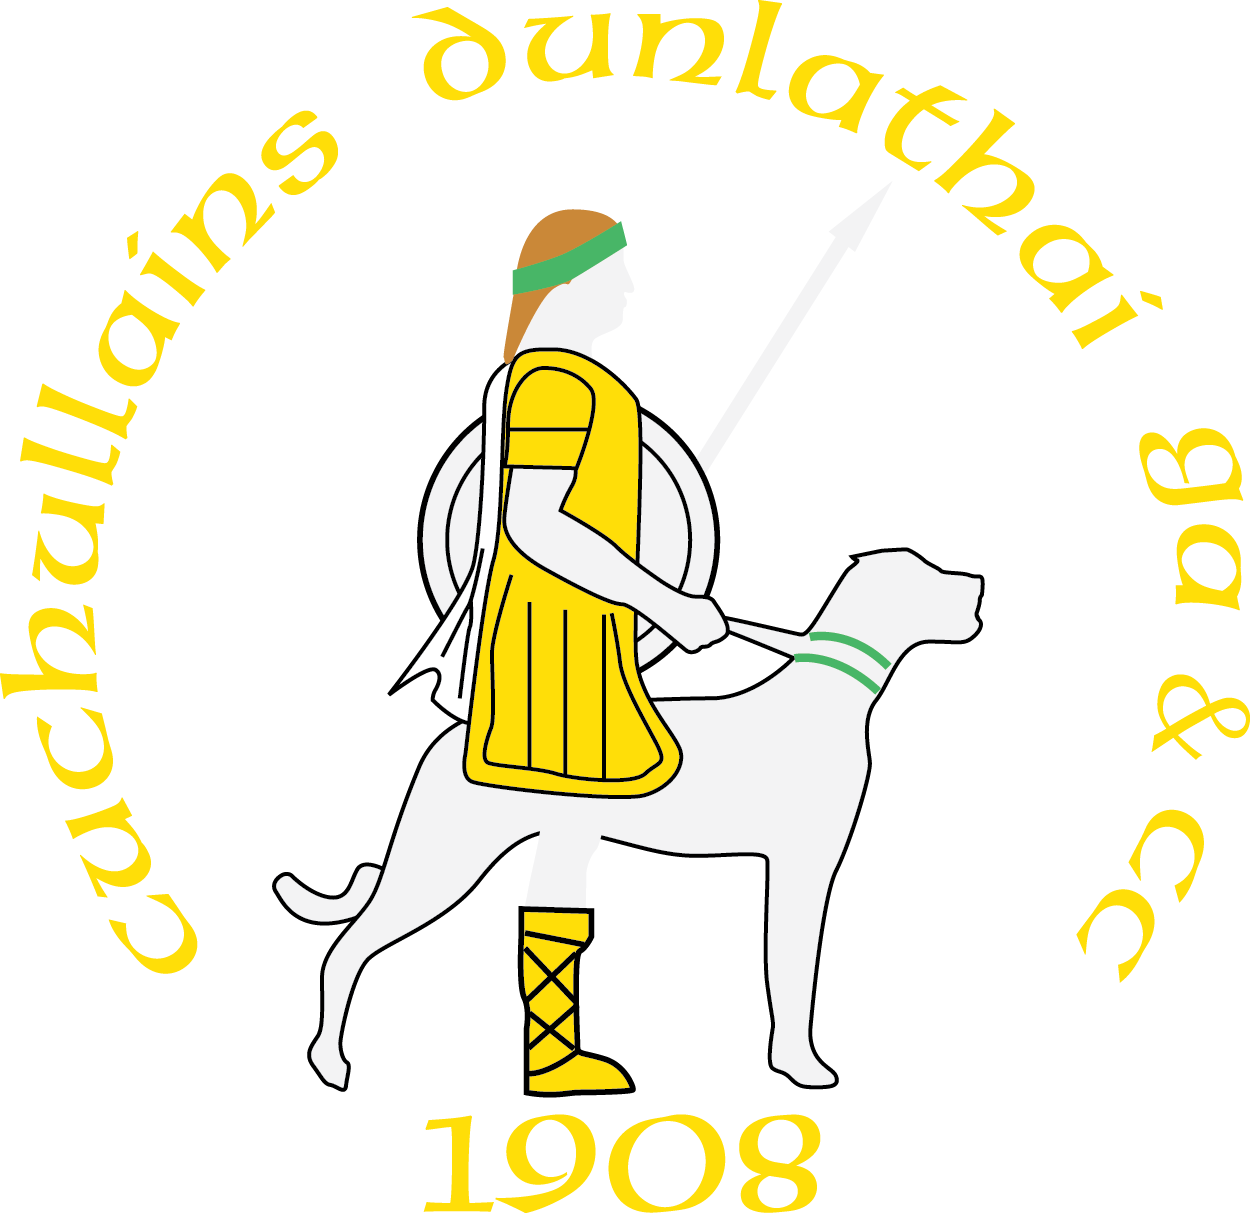 Dunloy Cúchullains